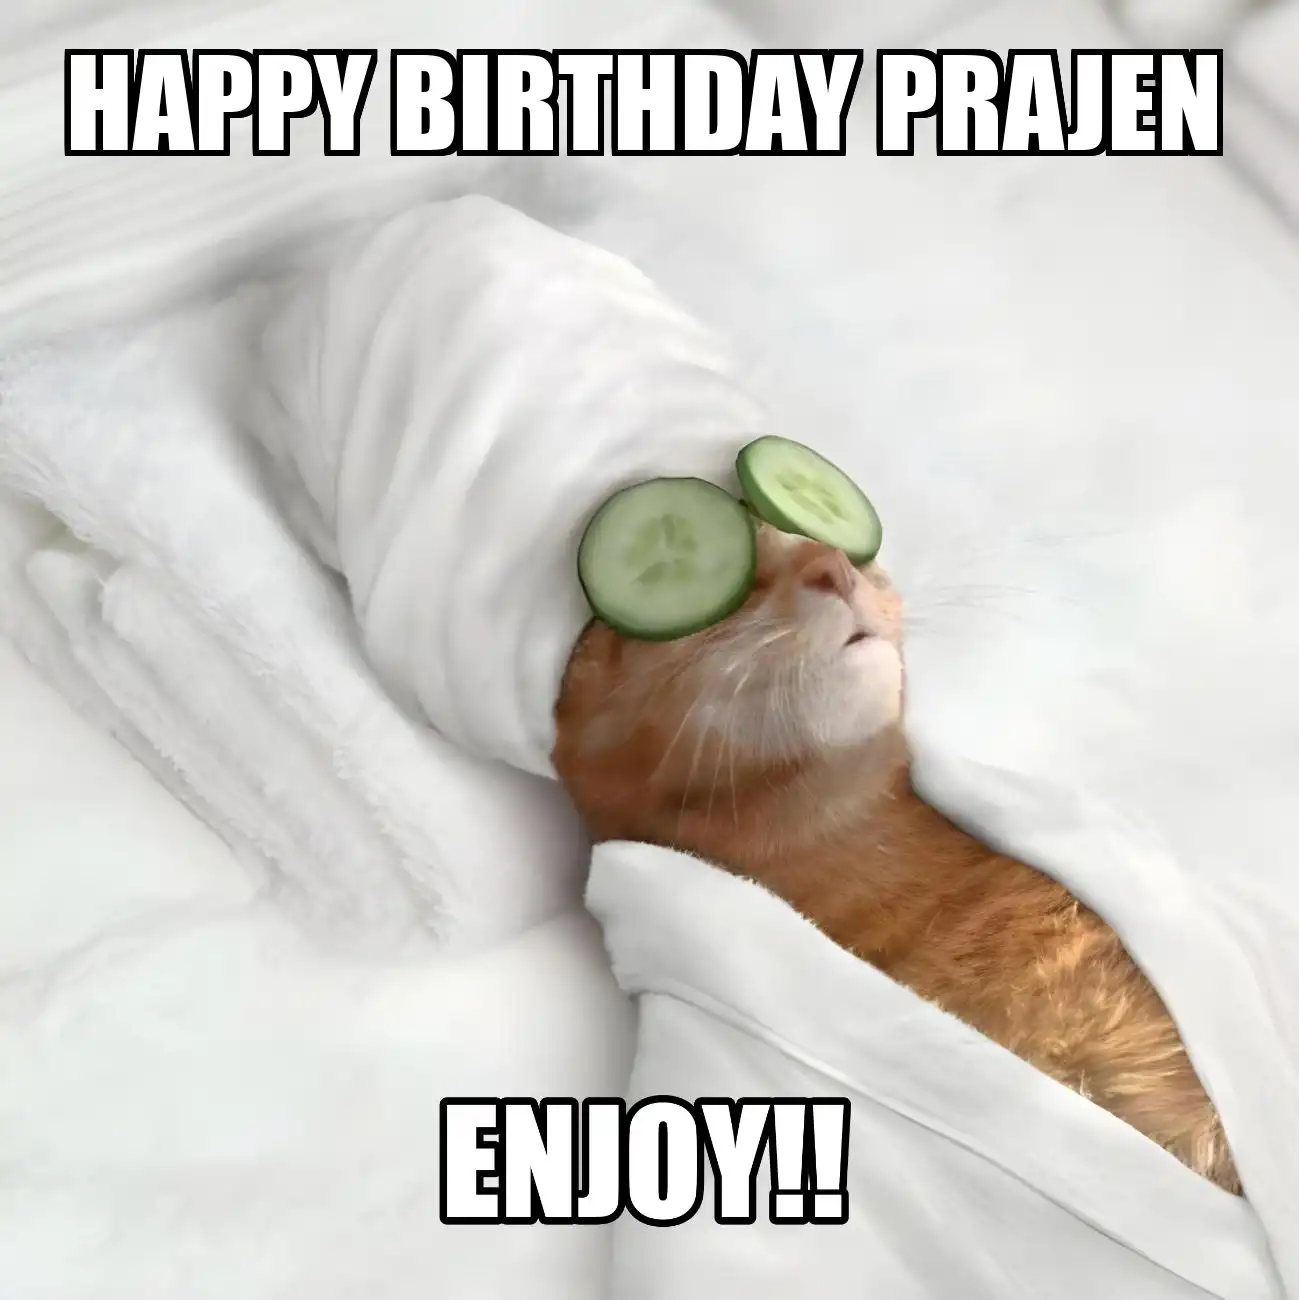 Happy Birthday Prajen Enjoy Cat Meme